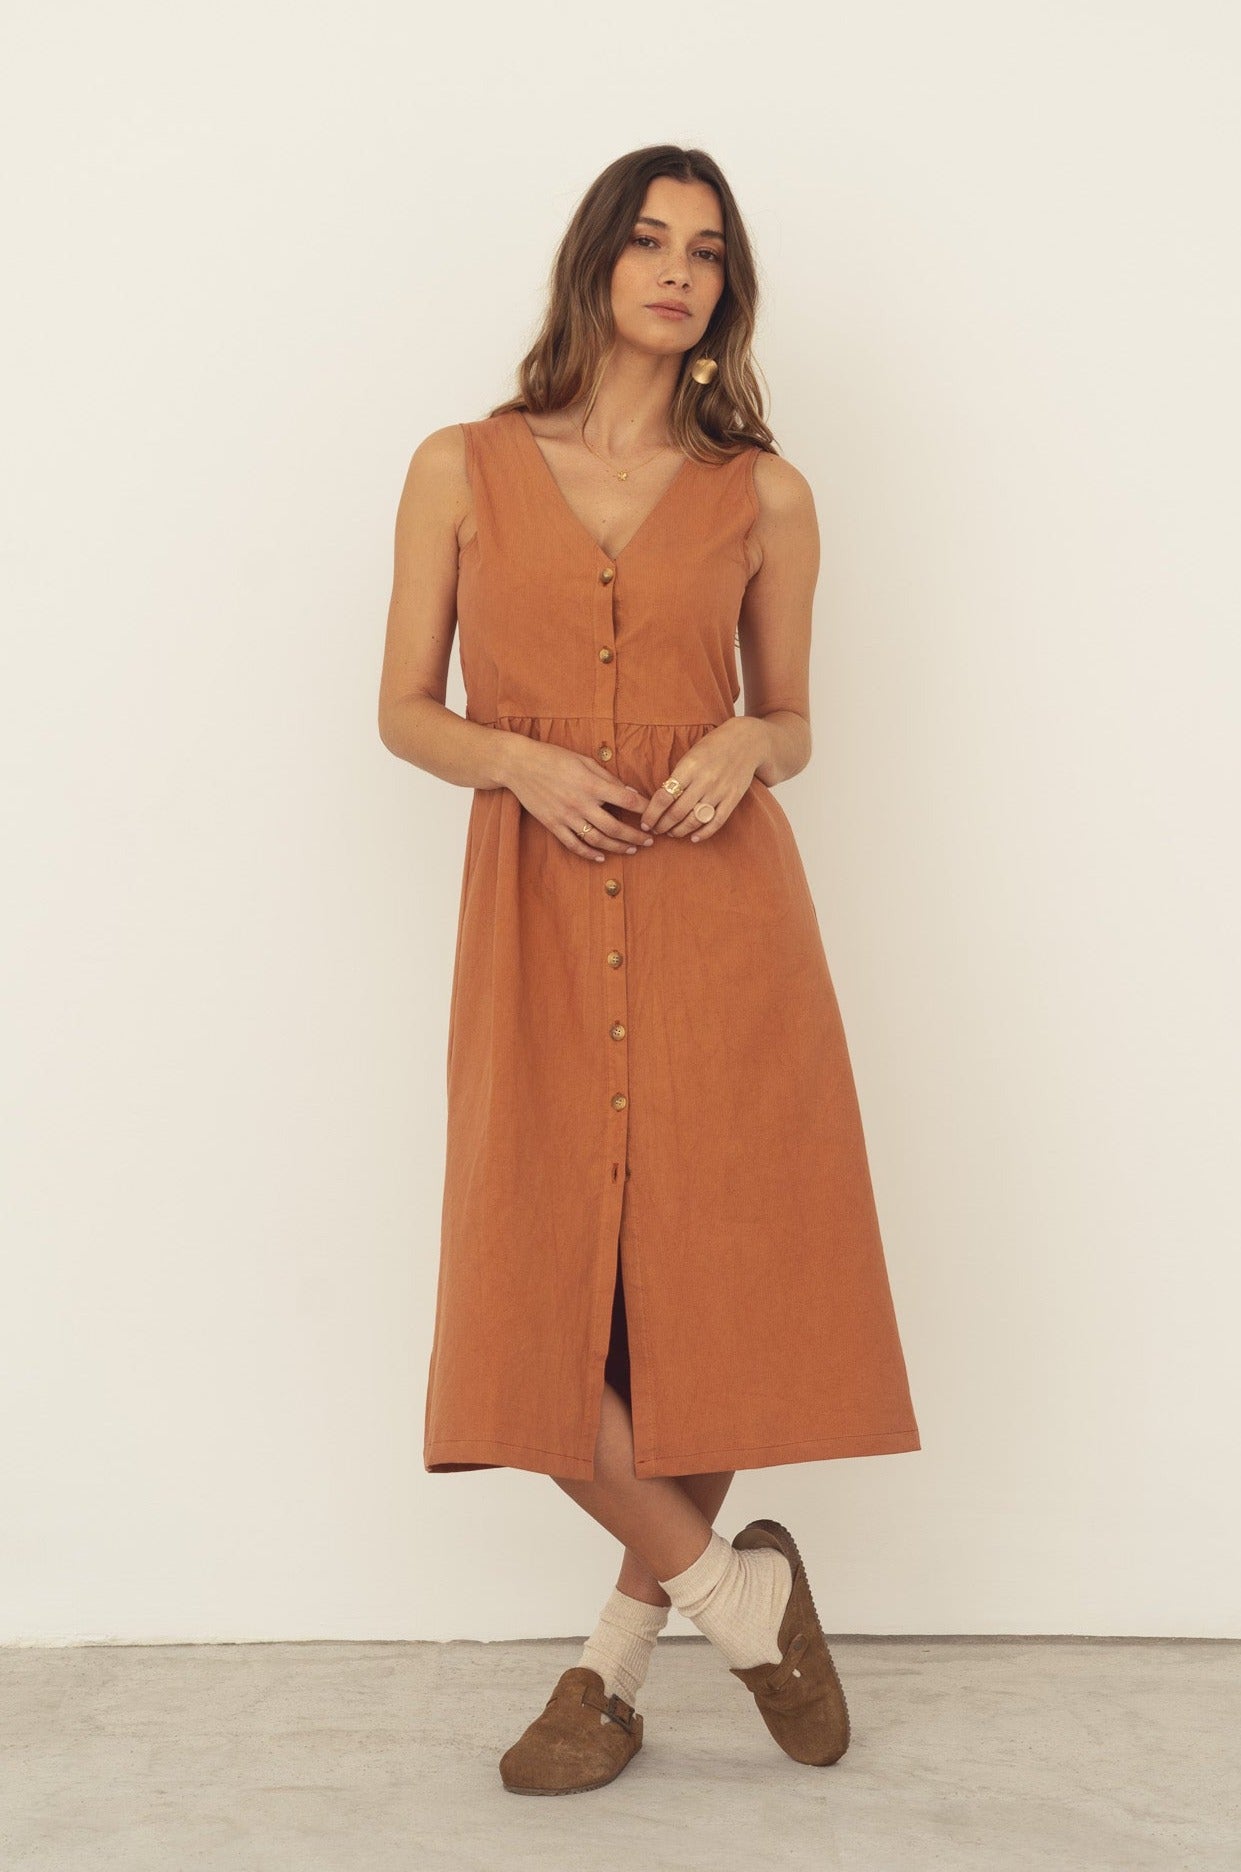 deadstock cotton sleeveless women dress summer peach colour 